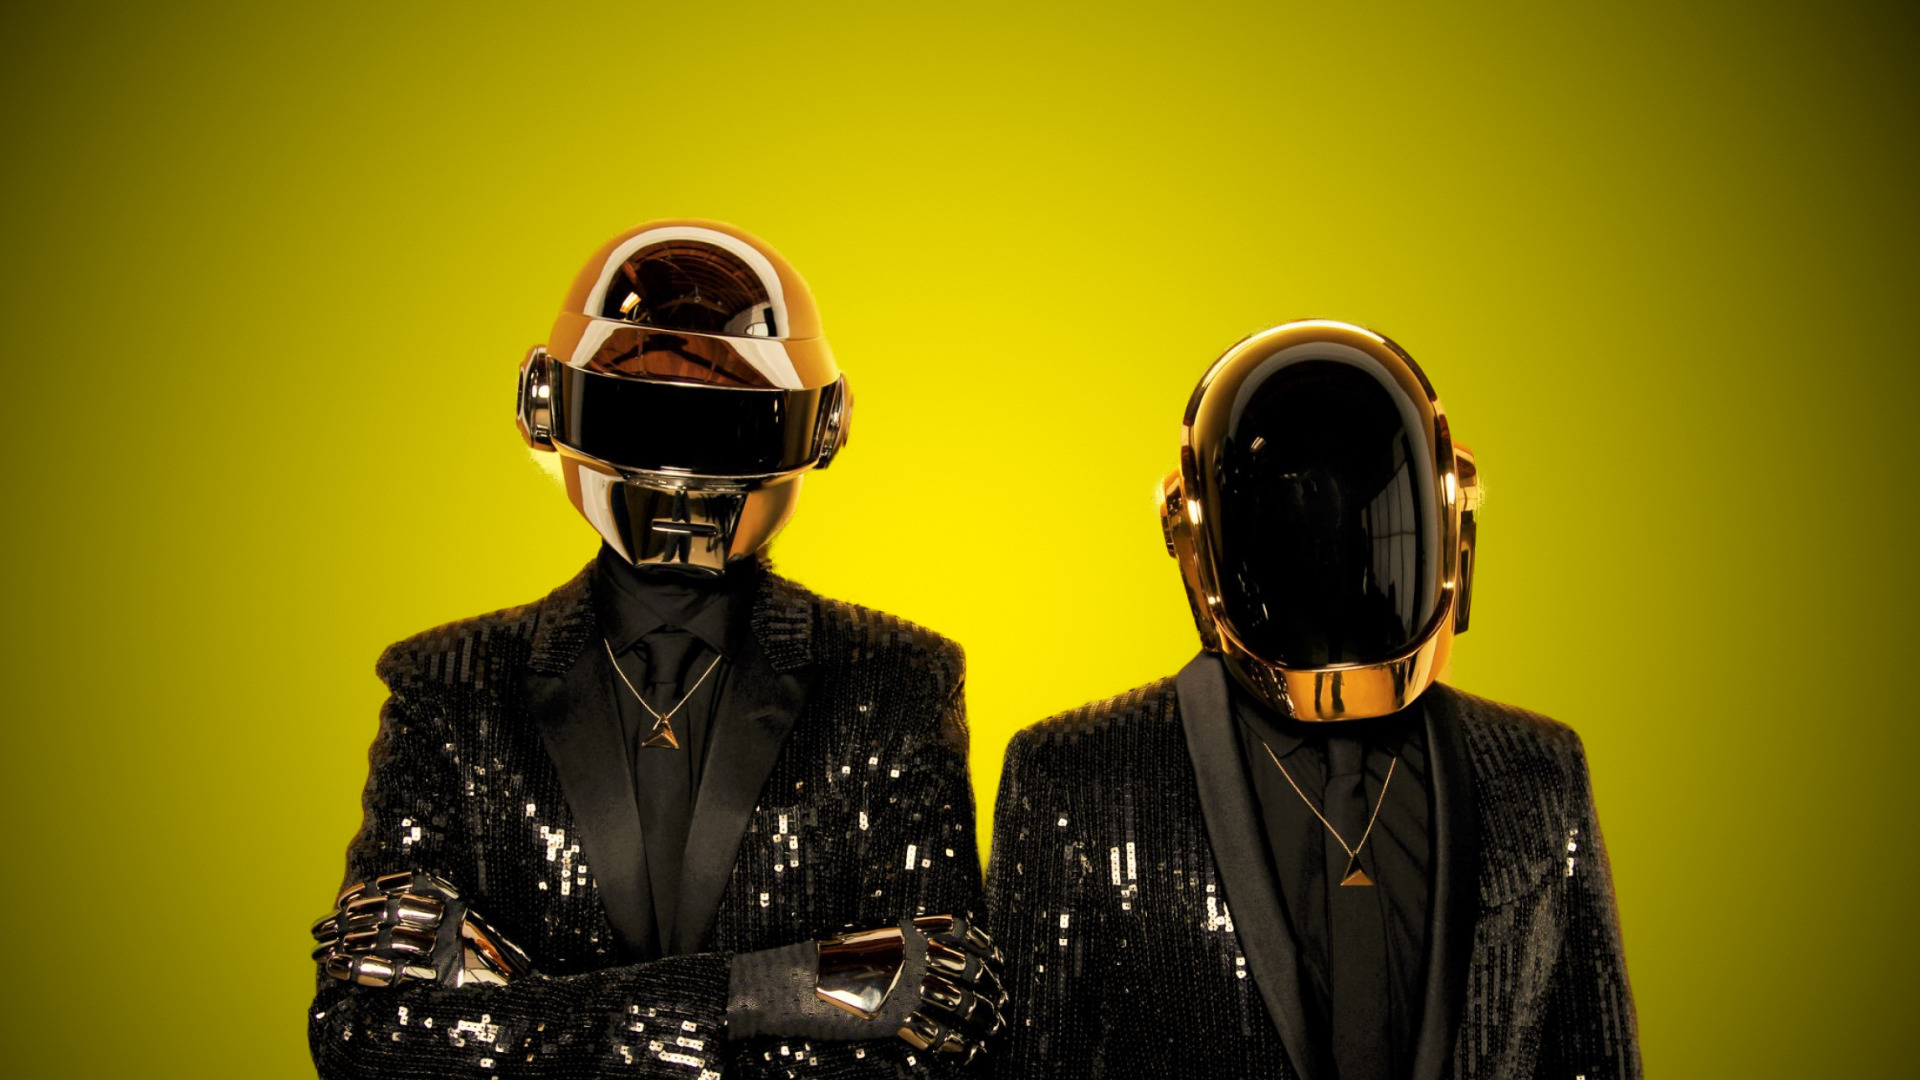 Sale a la luz un set inédito de Daft Punk